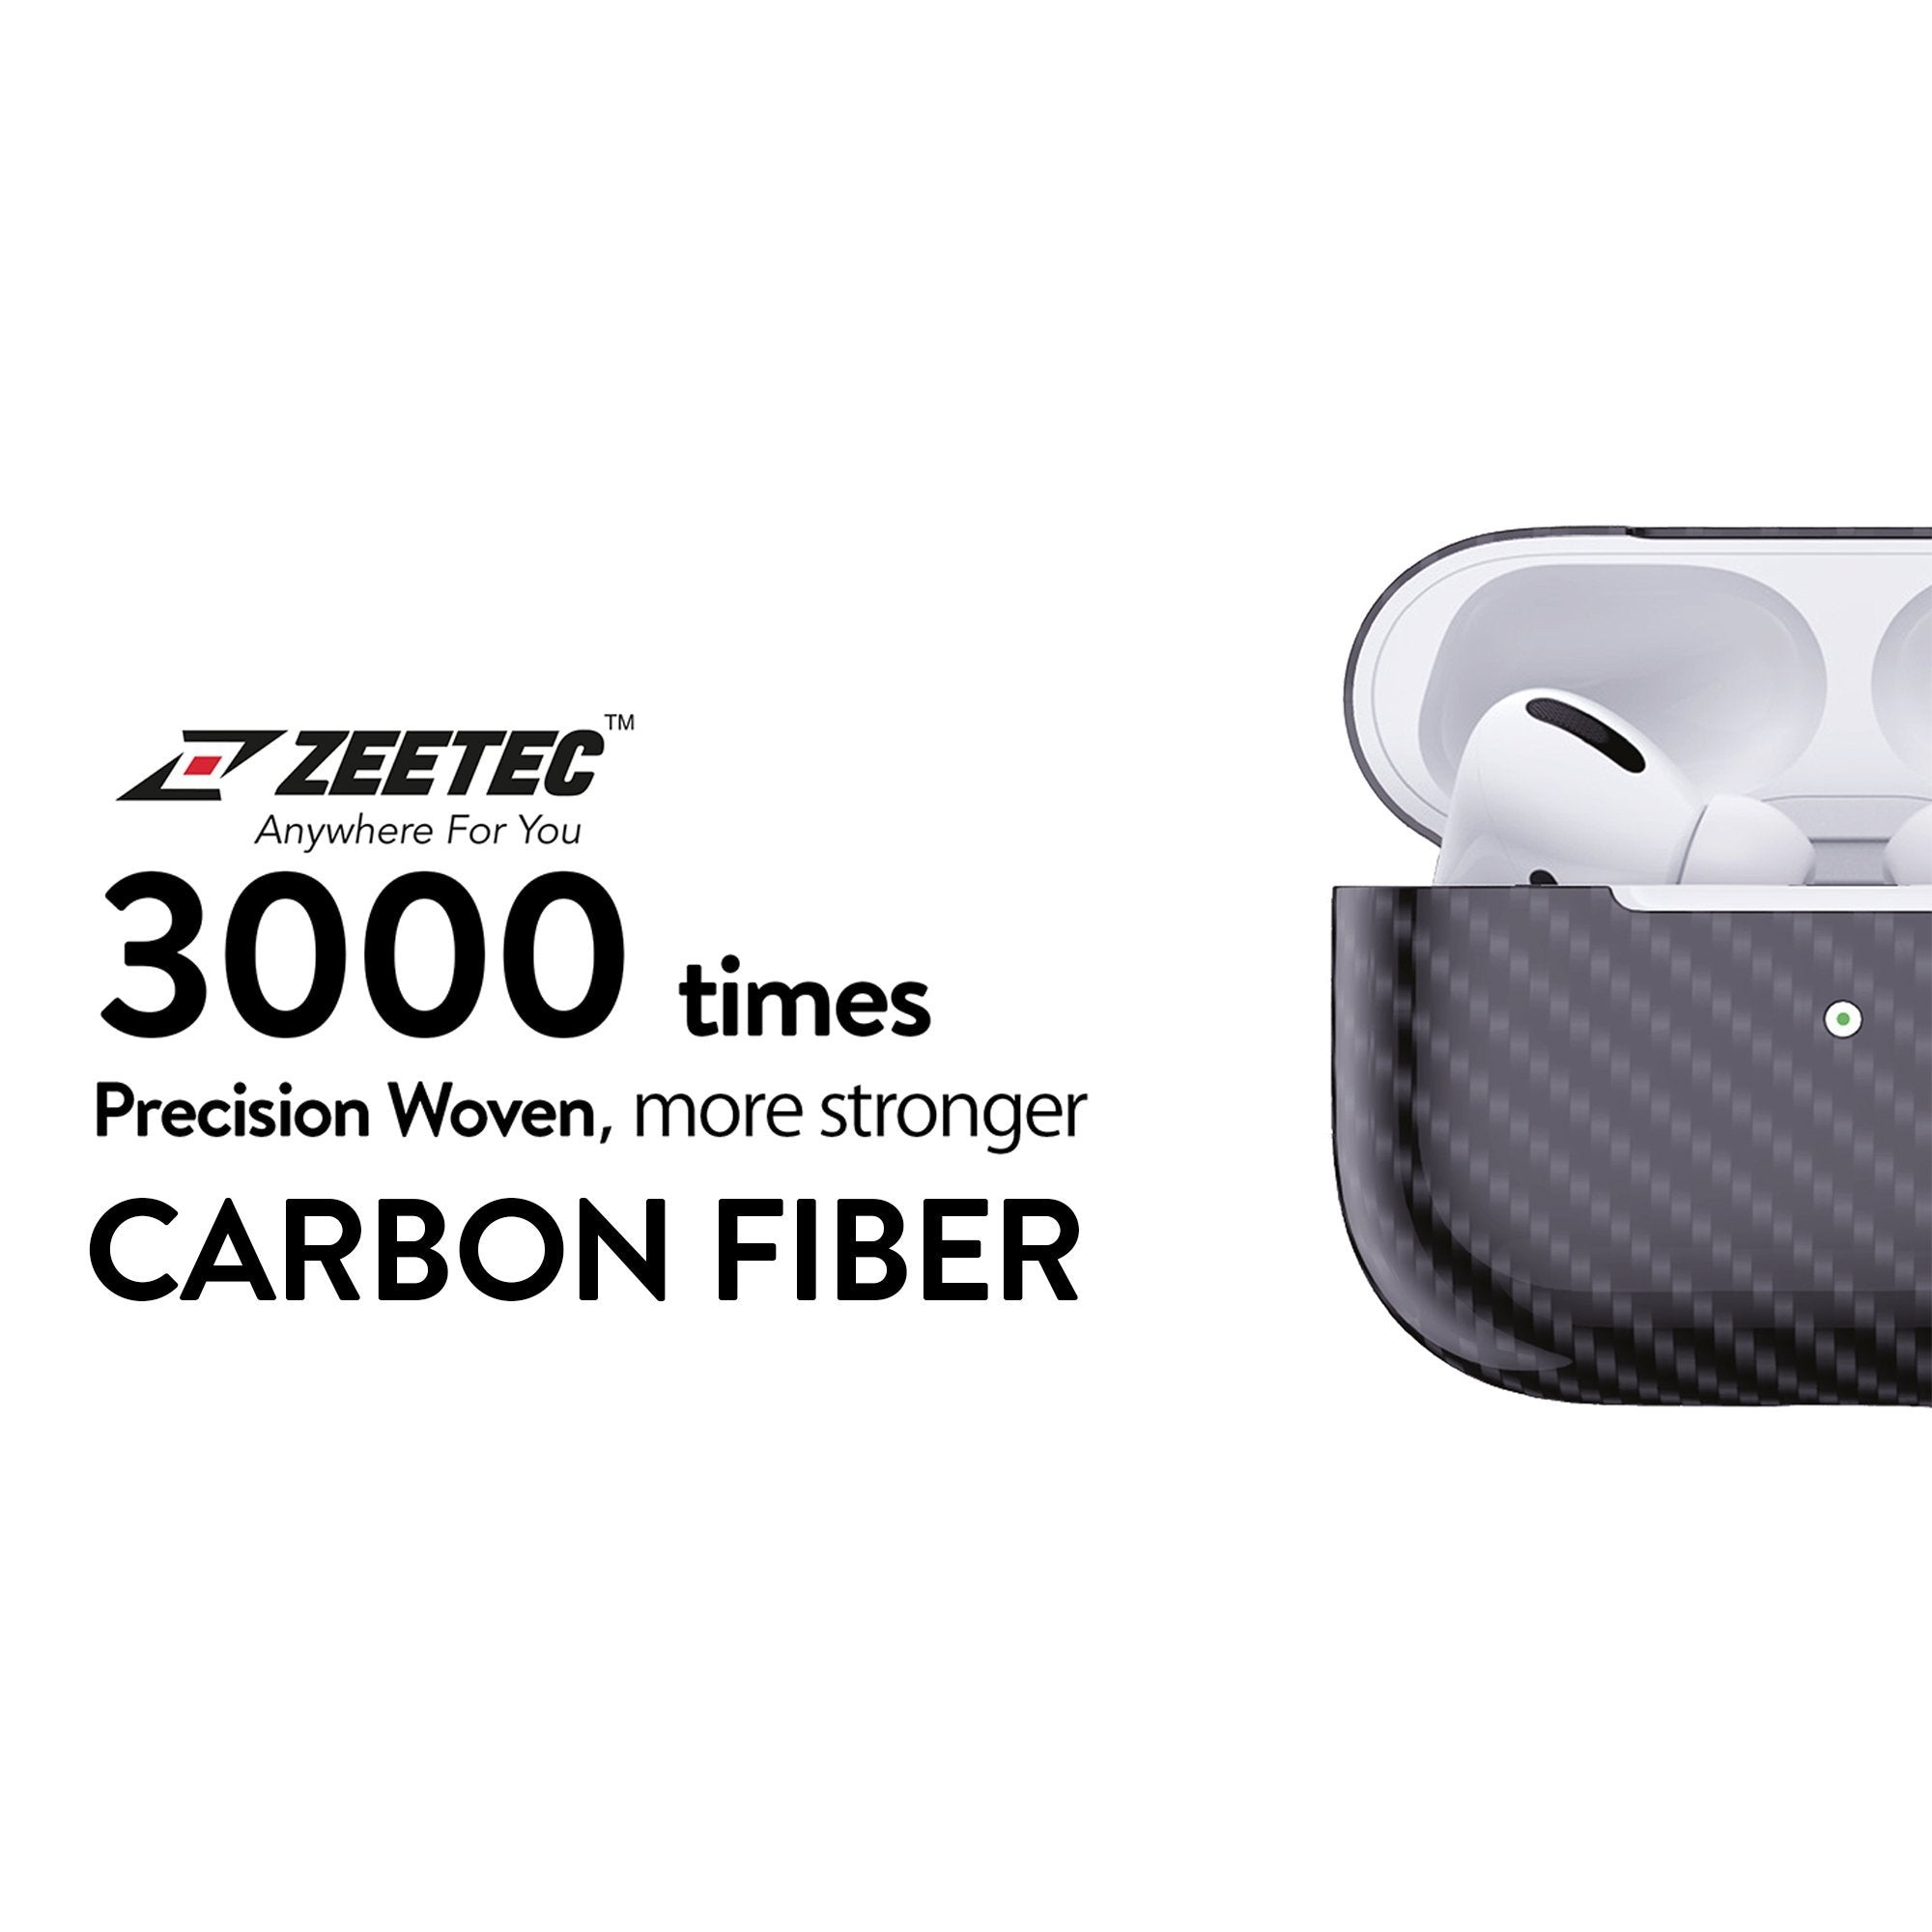 Zeetec Nitro Series Carbon Fiber Case for AirPods 2, Matte Black AirPods Case Zeetec 